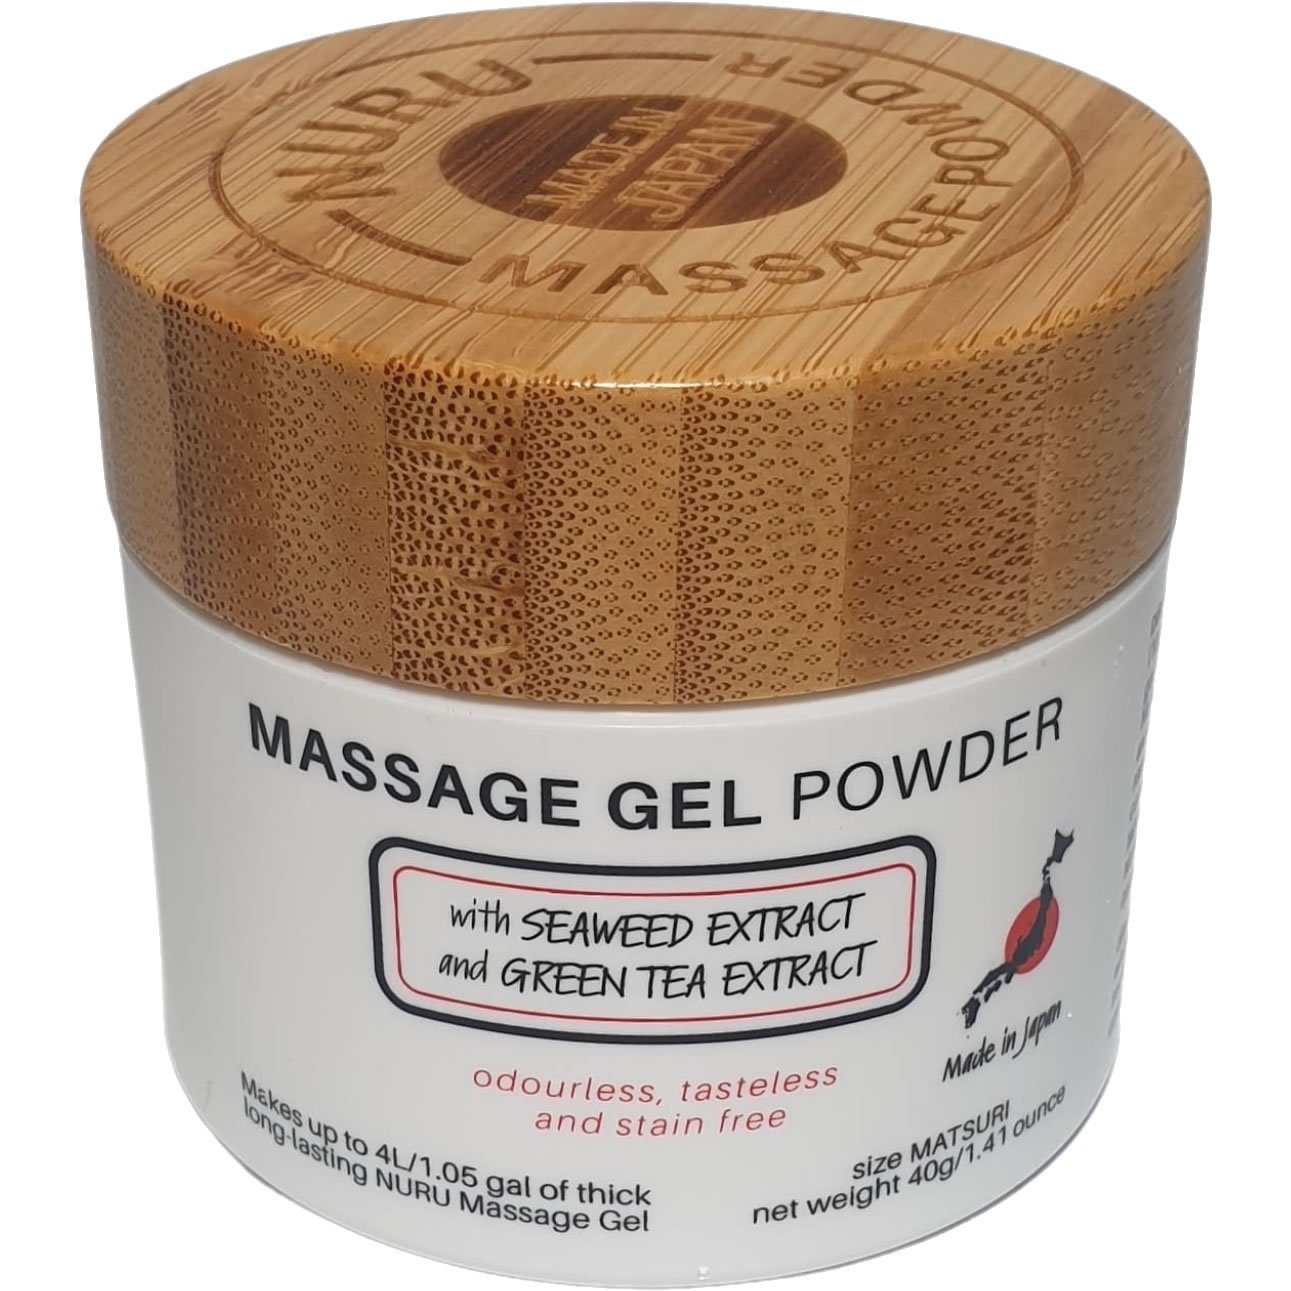 Made in Japan Gleit- und Massagegel Nuru Massage Gel Powder (Nori Seaweed & Green Tea), MATSURI Edition, Dose mit 40g, 1-tlg., japanisches Massagegel-Pulver aus natürlichen Inhaltsstoffen